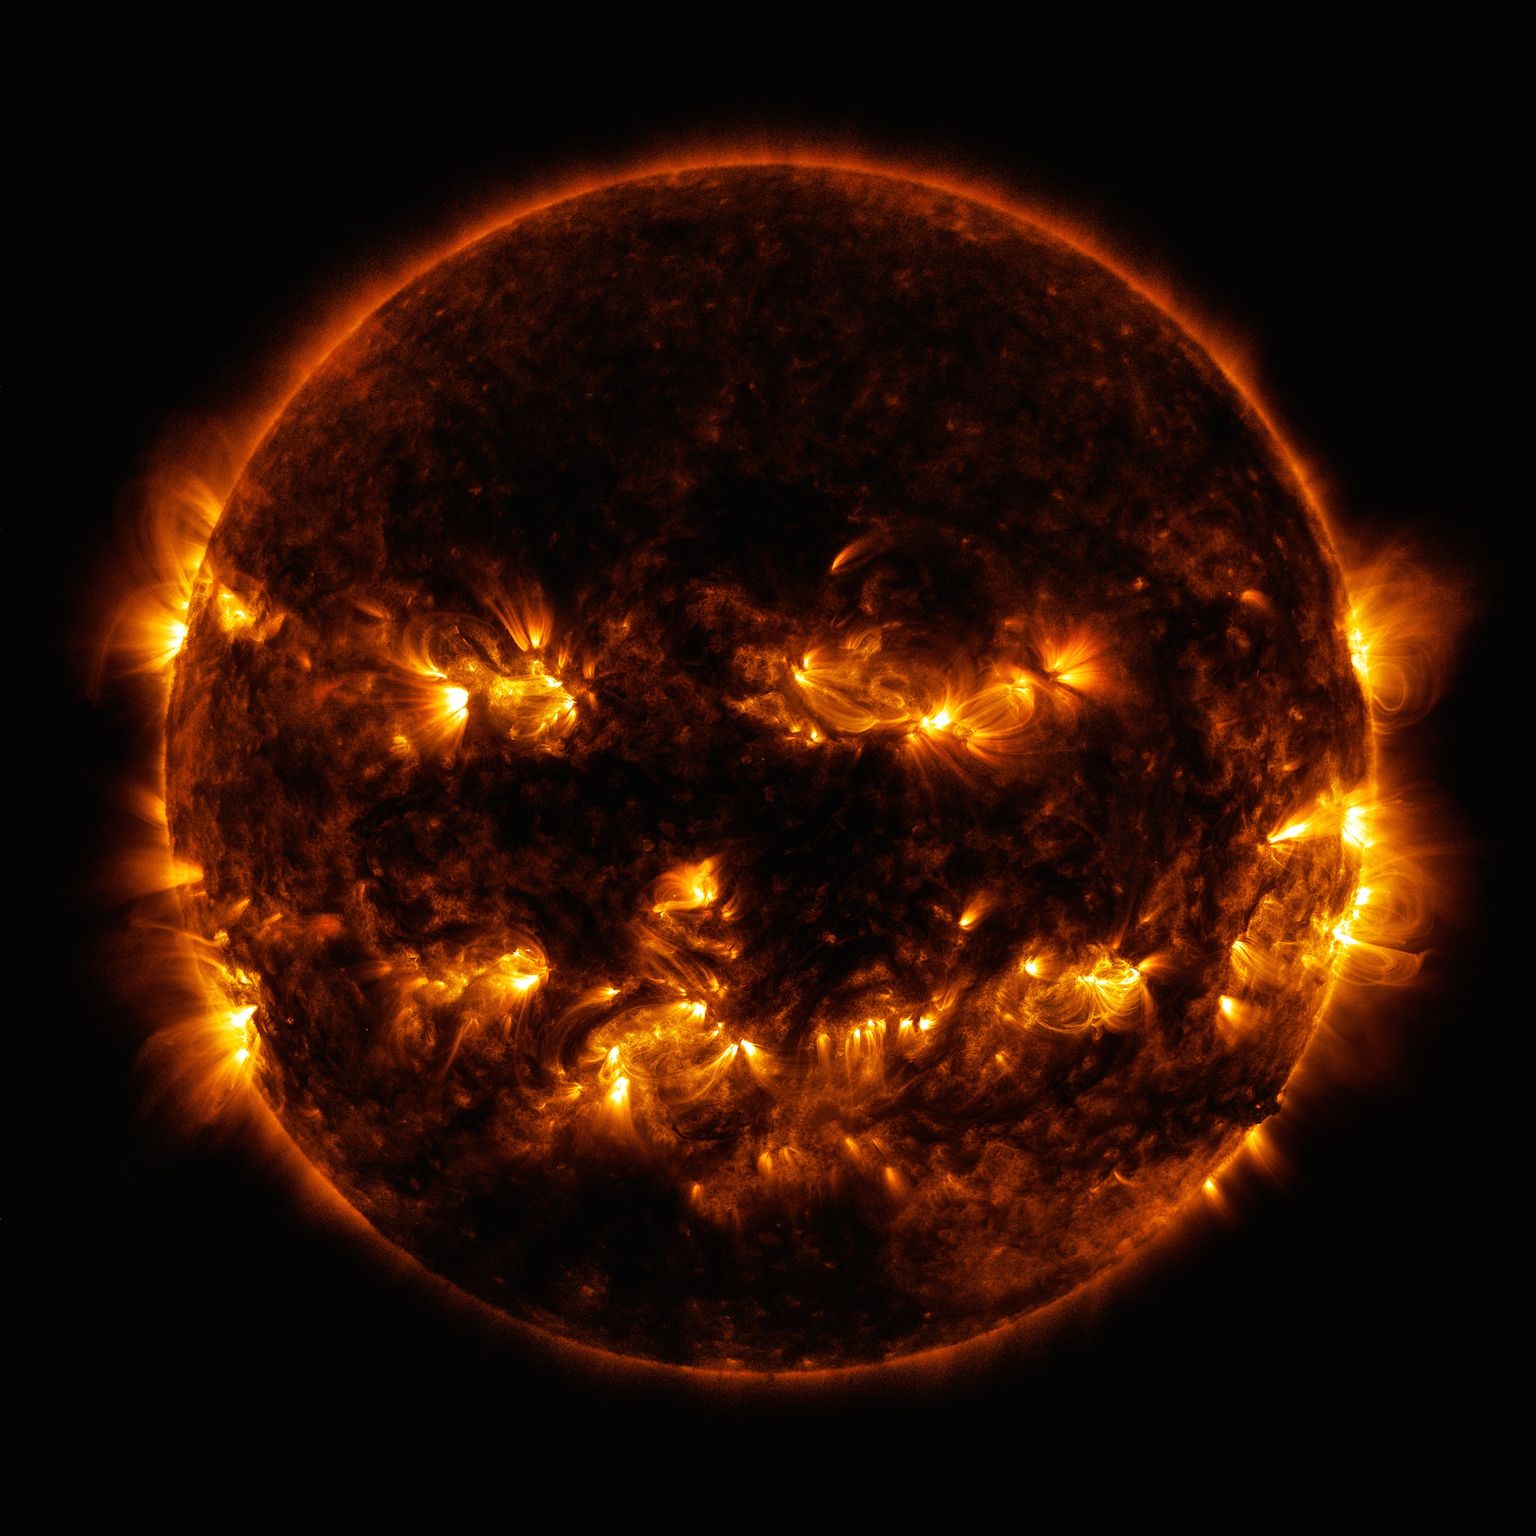 Päikese kurikaval nägu 8. oktoobril 2014. Heledamana paistavad aktiivsemad Päikese-piirkonnad, mis kiirgavad rohkem valgust ja energiat.